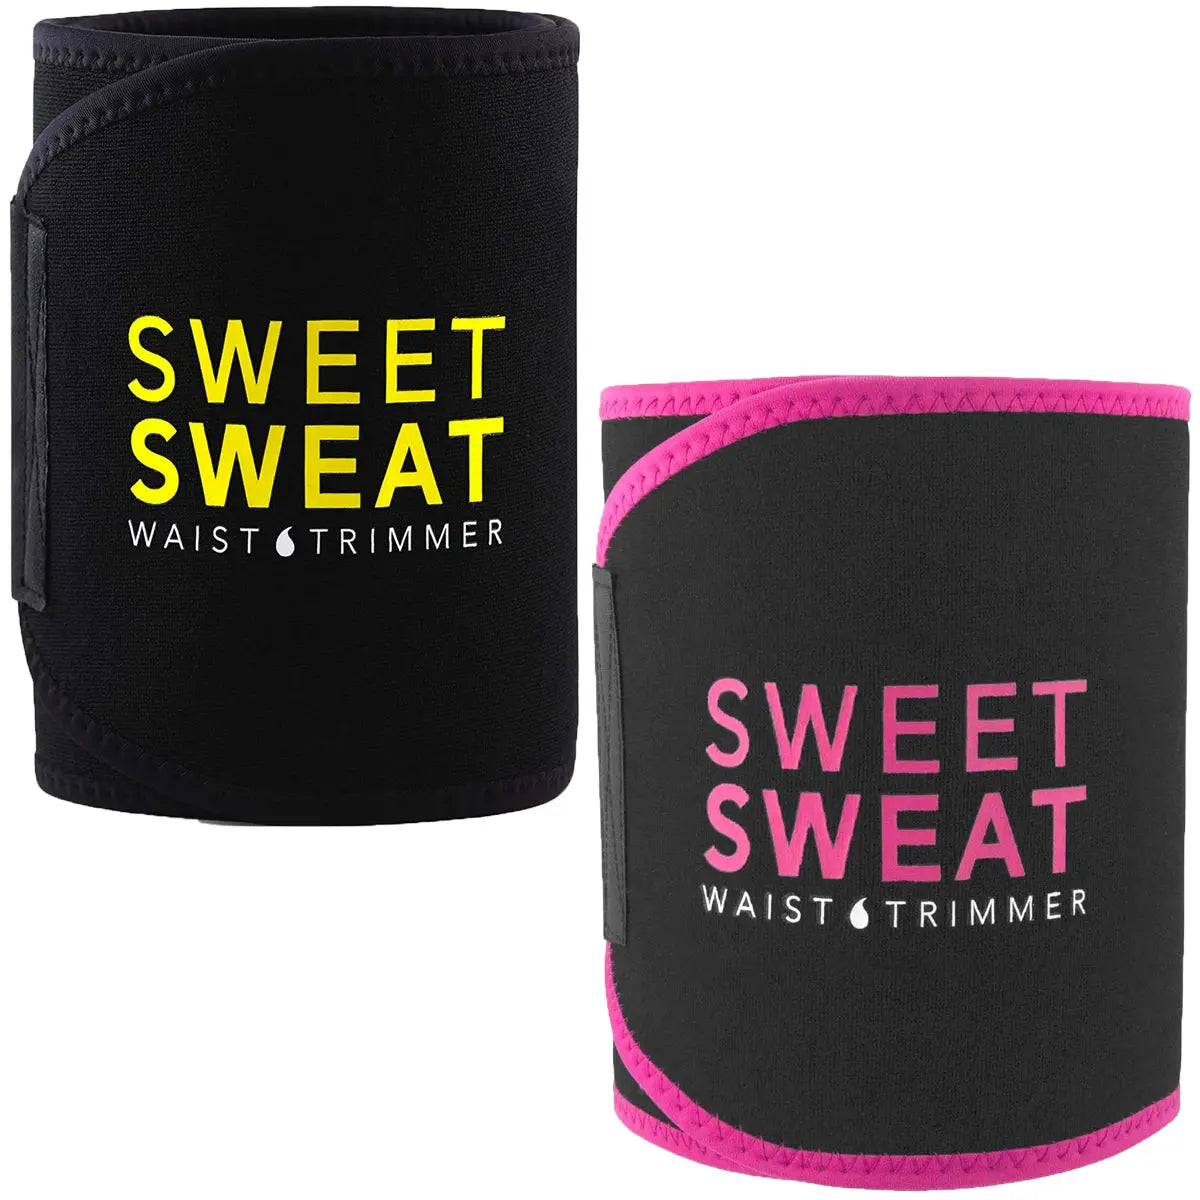 Sports Research Sweet Sweat Waist Trimmer Belt - Medium